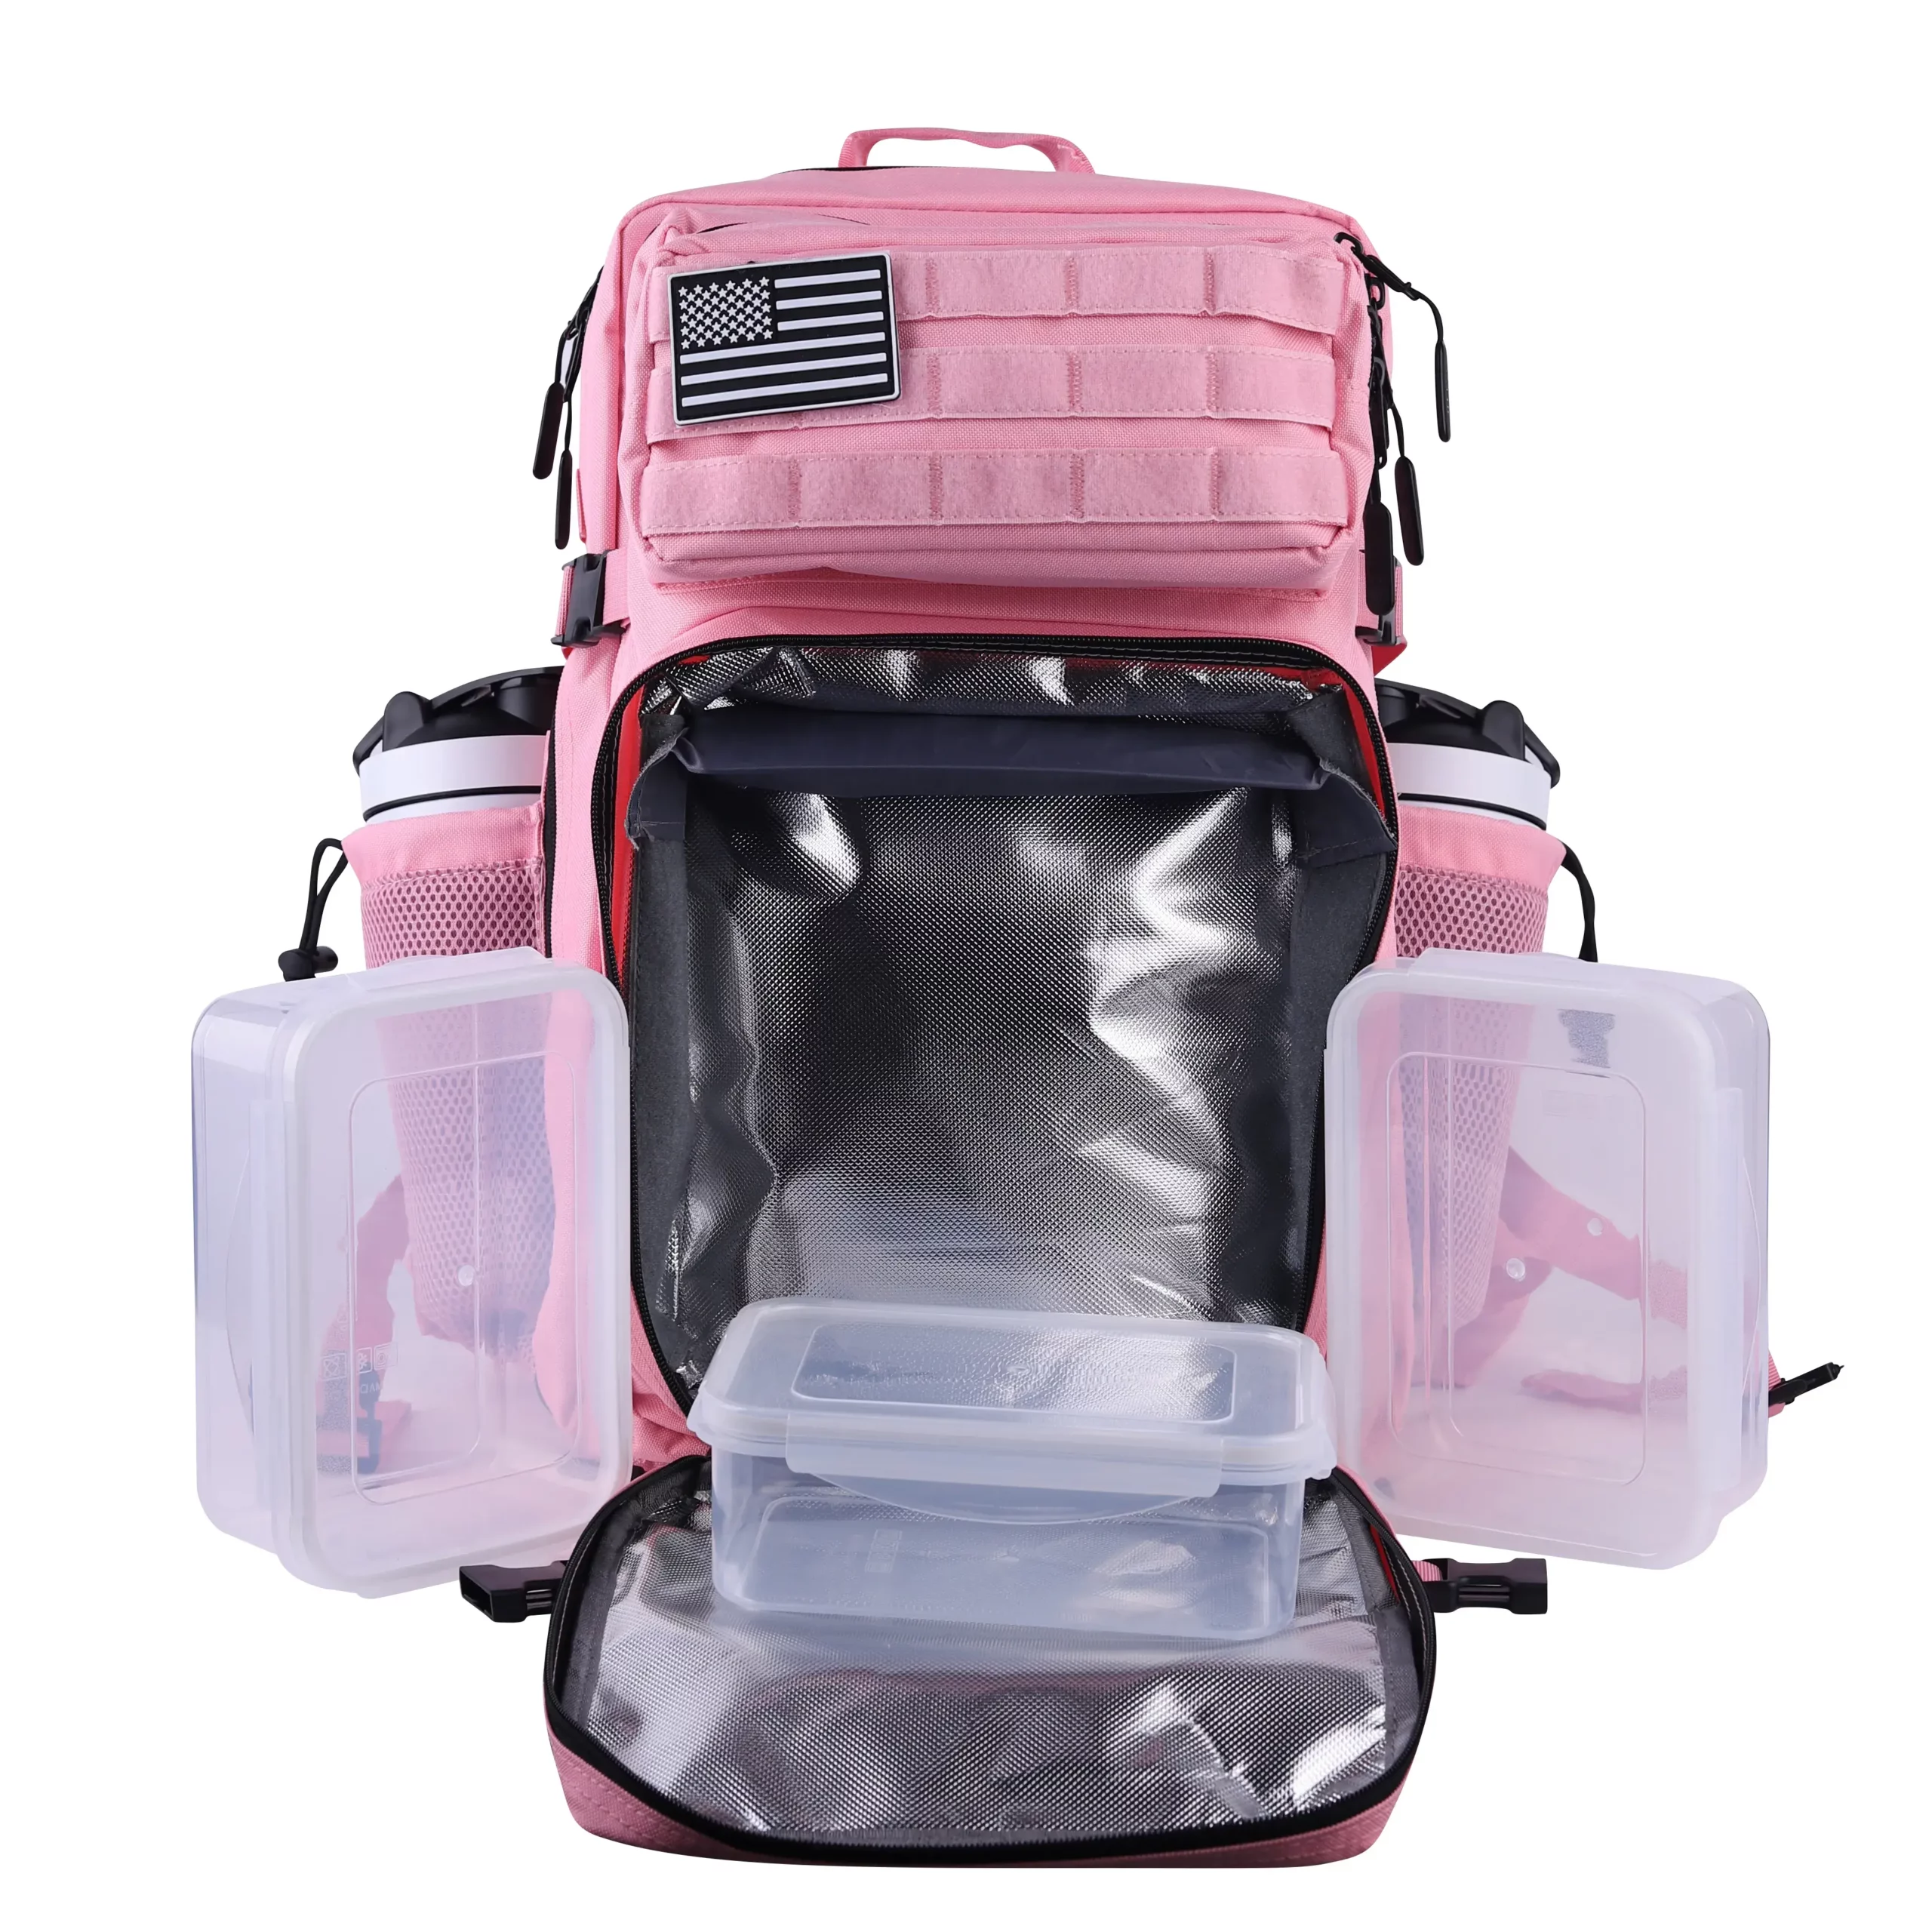 45L Meal Prep Management Backpack Pink – LHI